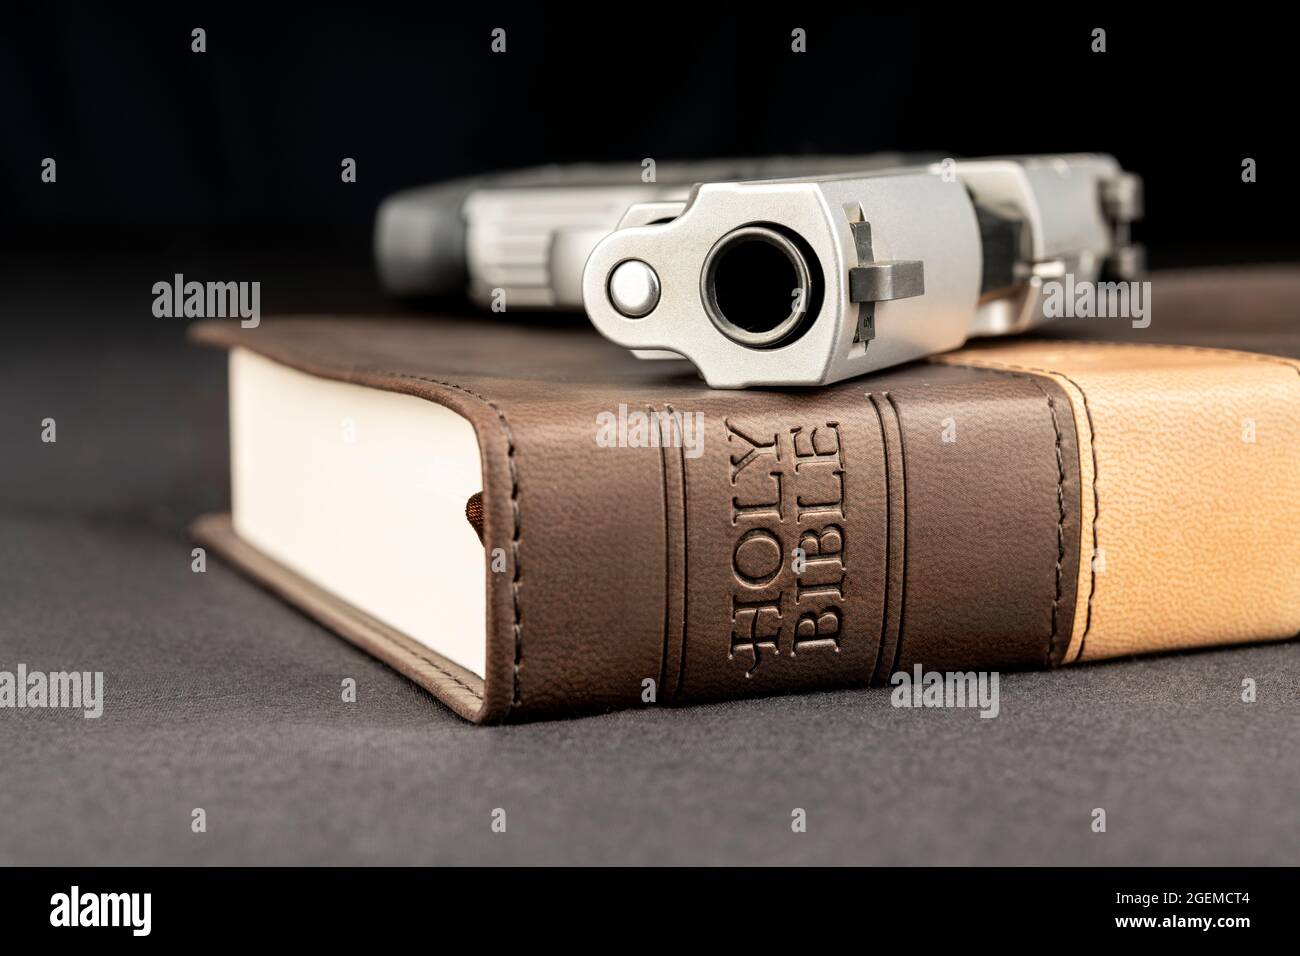 Eine Waffe ruht auf einer heiligen bibel, die Gott, Waffen und Religionsfreiheit repräsentiert. Stockfoto